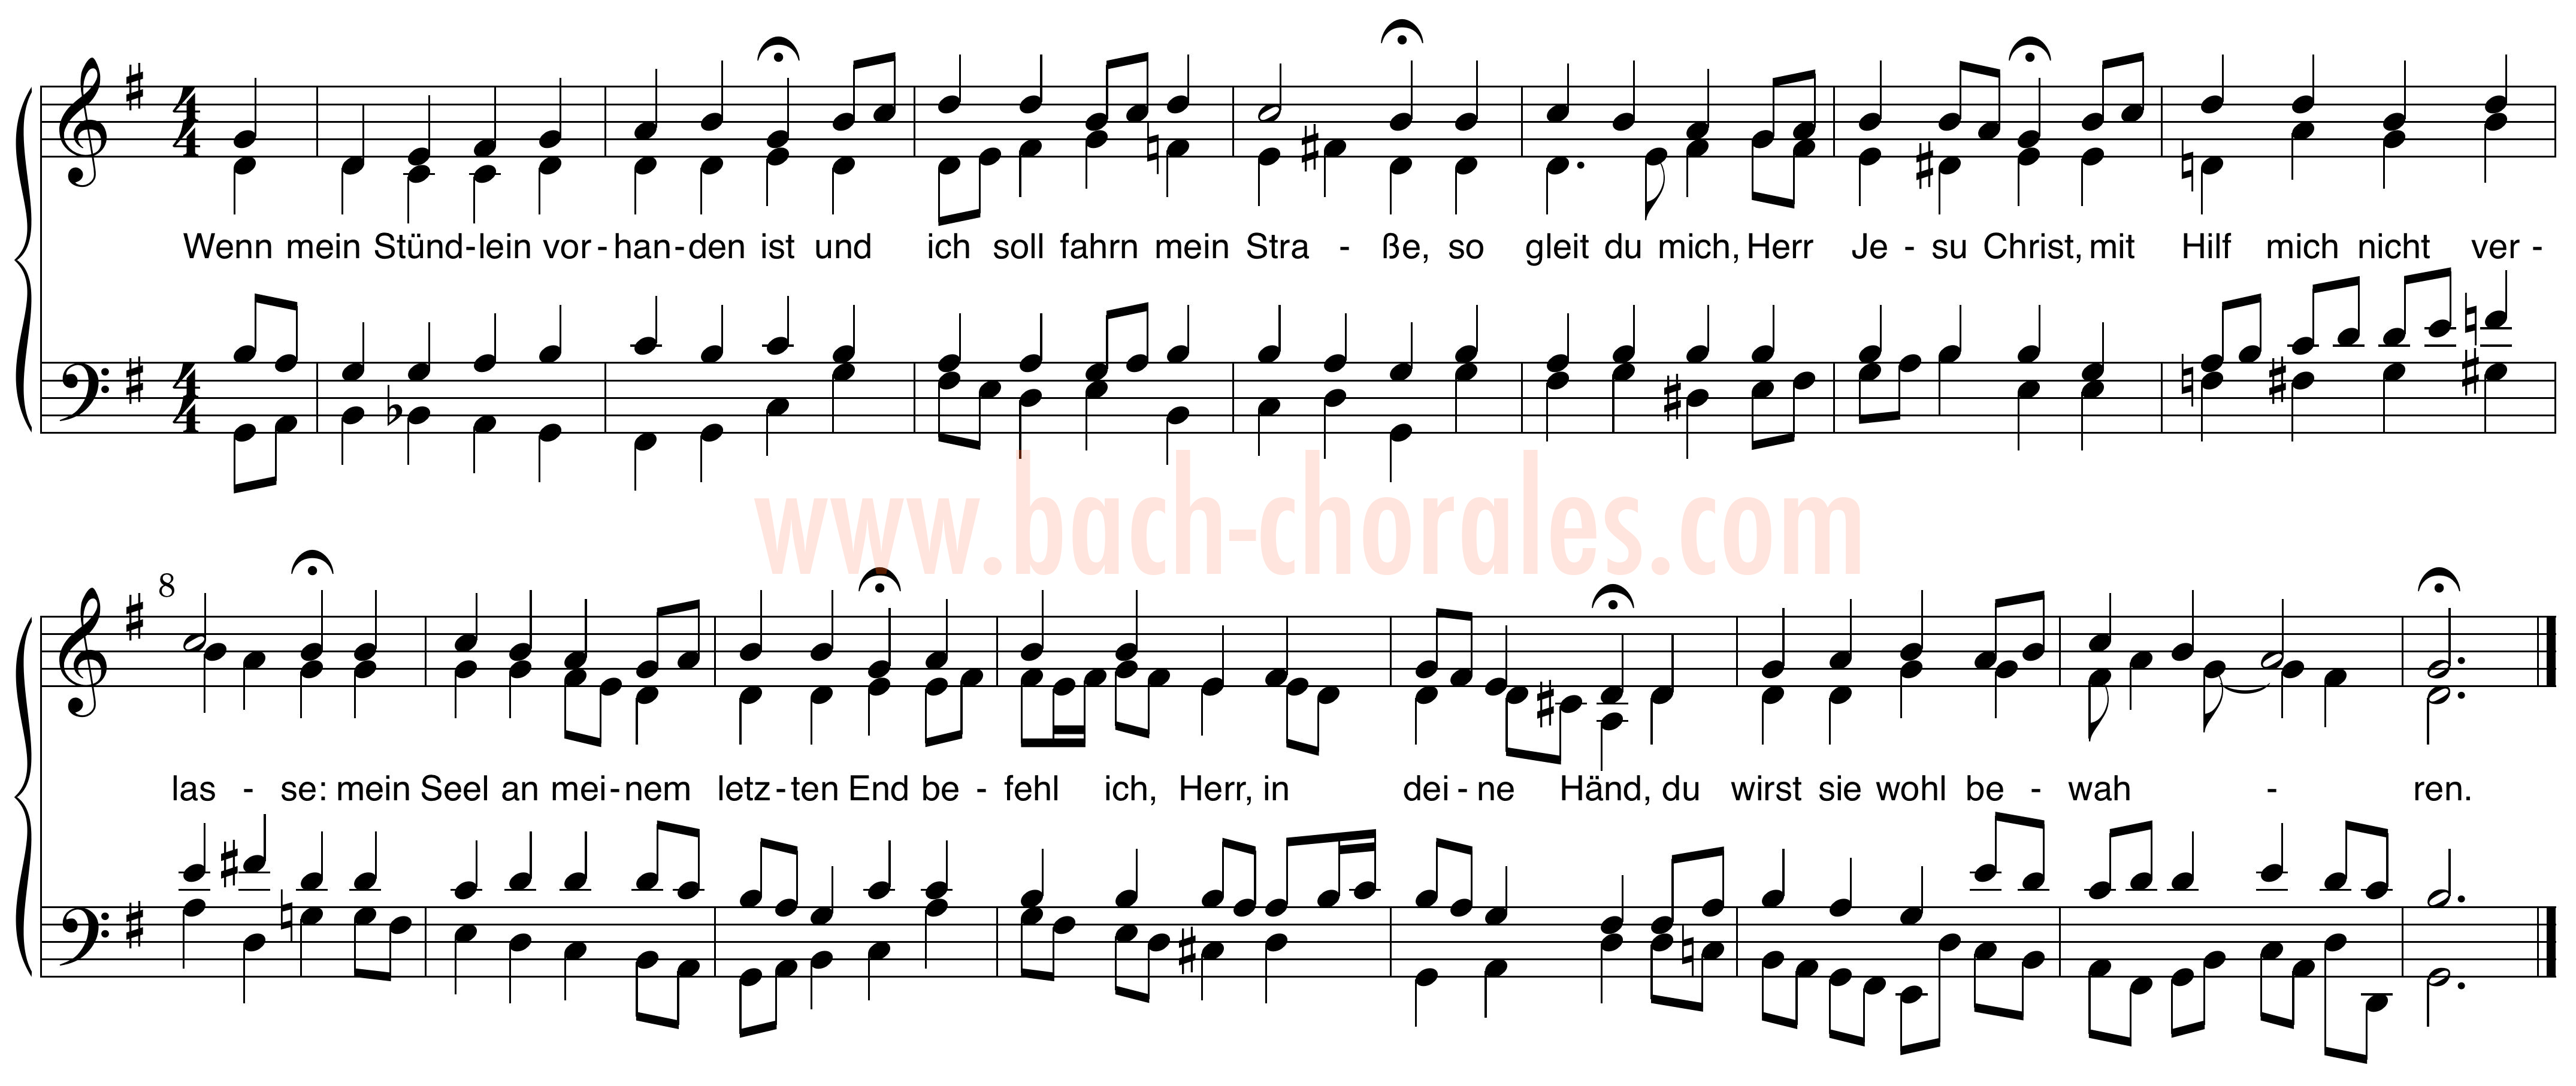 notenbeeld BWV 428 op https://www.bach-chorales.com/